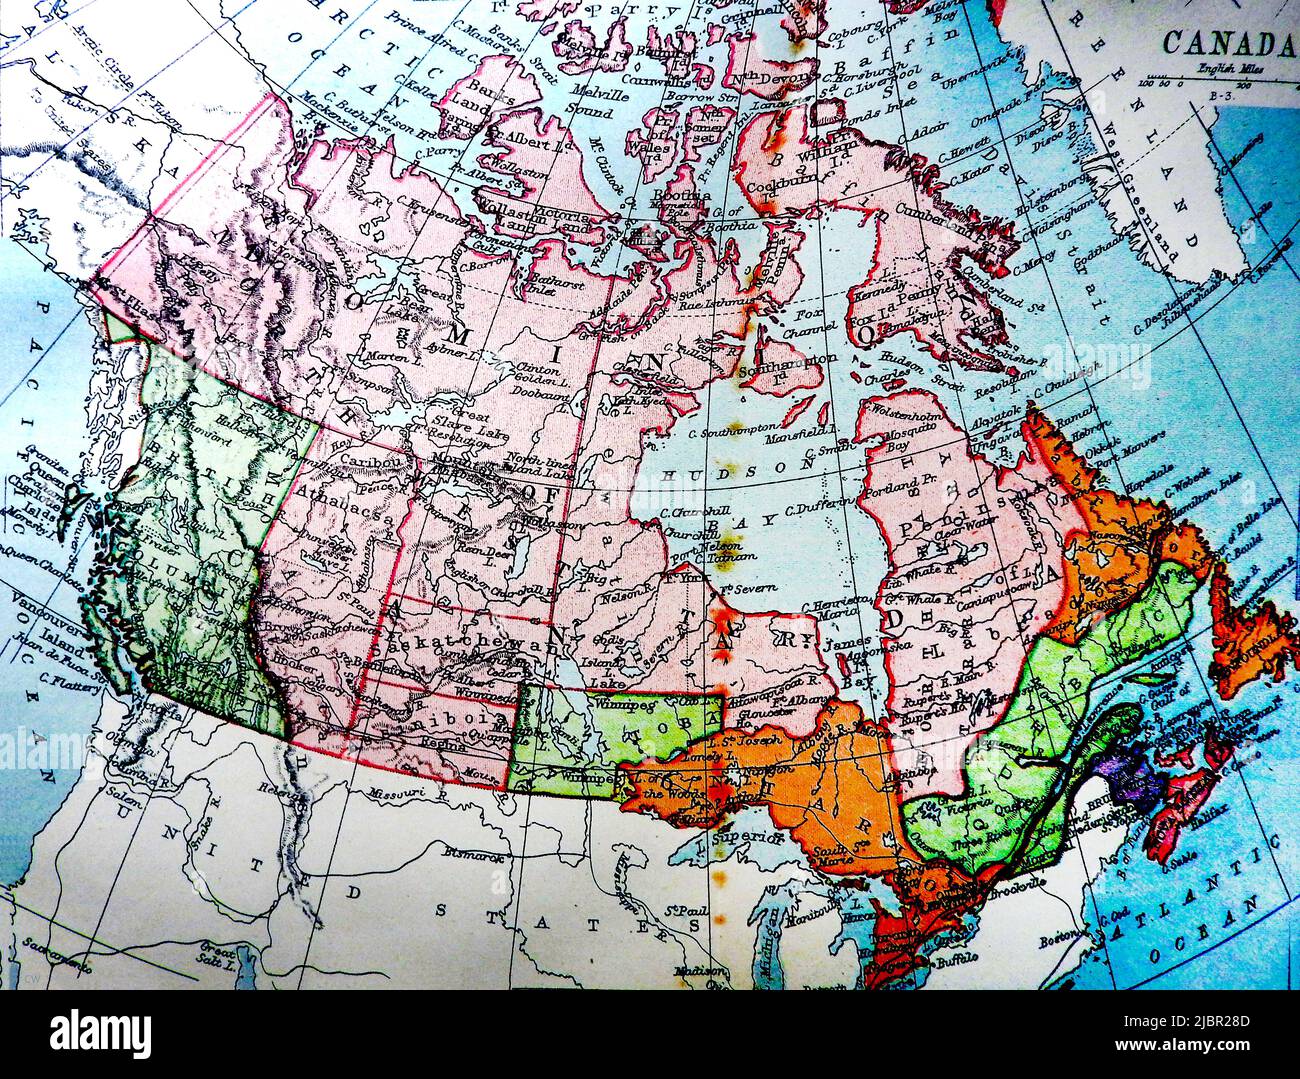 Una mappa britannica del Canada della fine del 19th secolo che mostra i nomi dei luoghi, i laghi, le divisioni regionali così come erano a quel tempo e le distanze in miglia inglesi Foto Stock